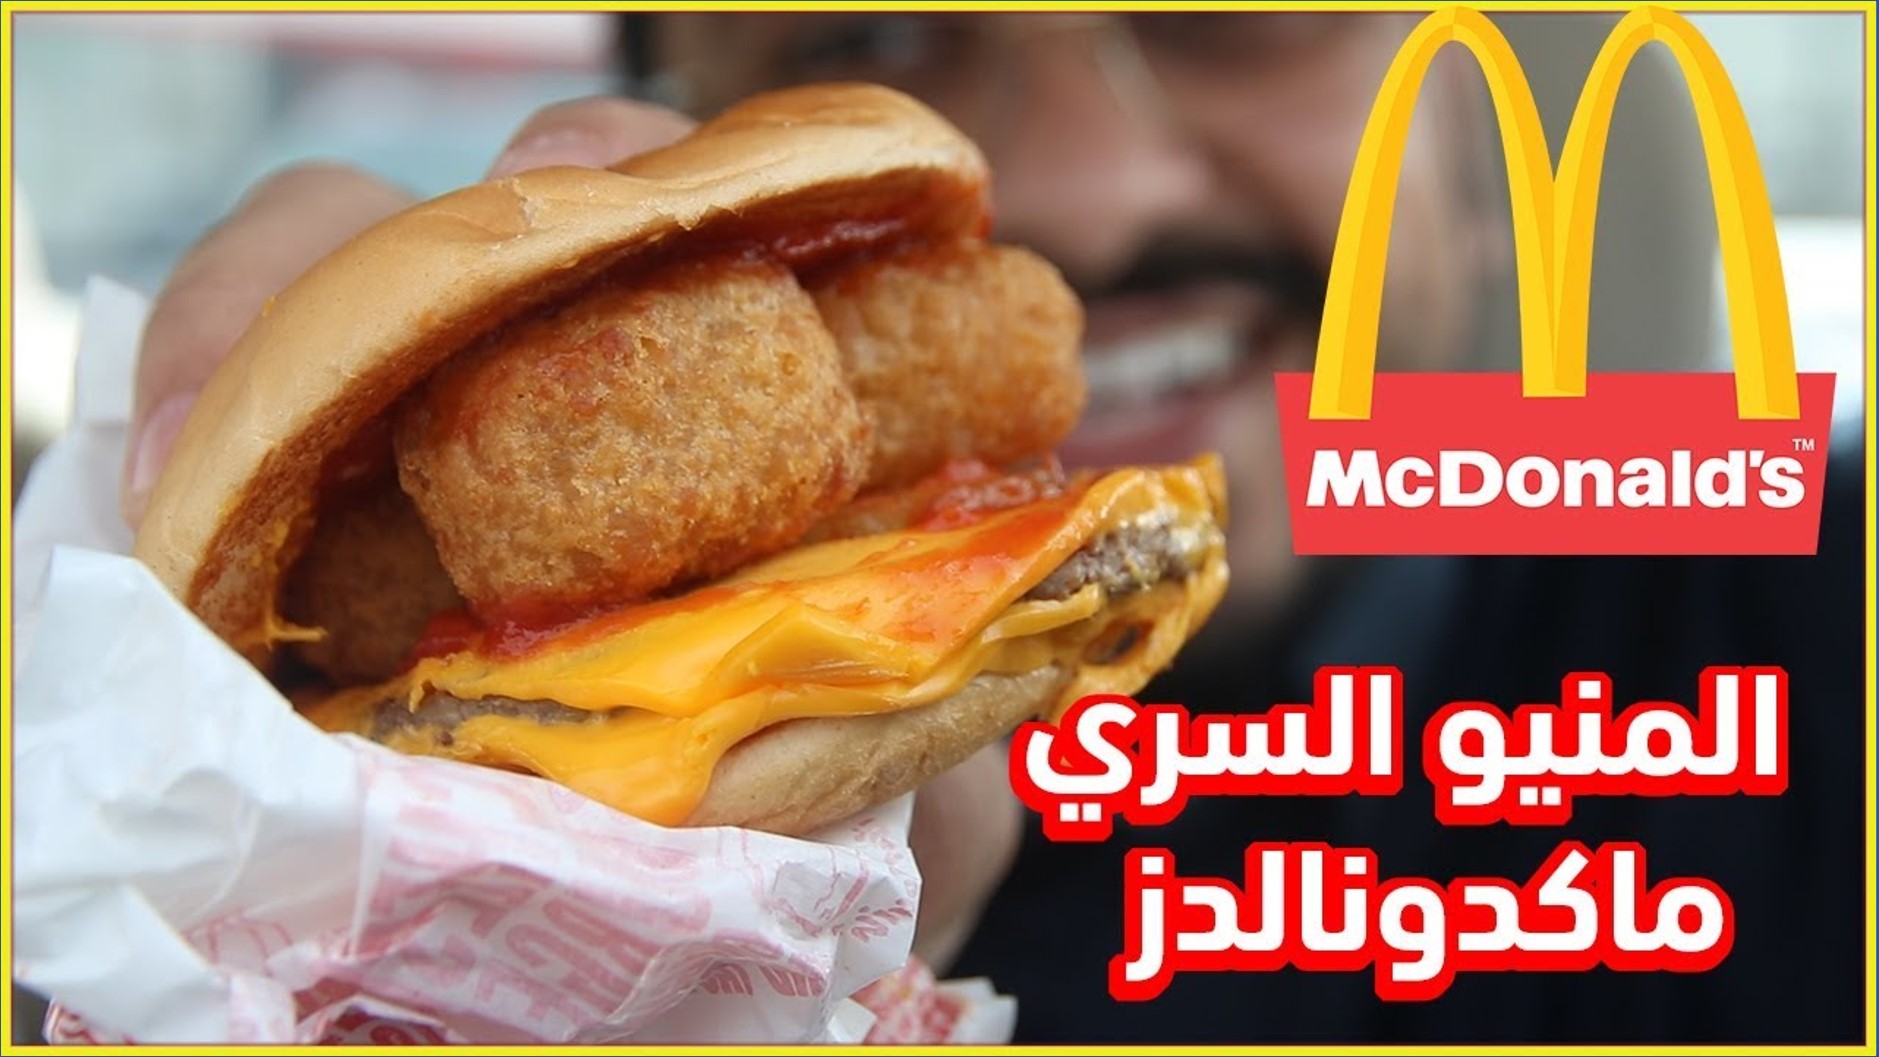 ماكدونالدز السعودية - 15000 وظيفة